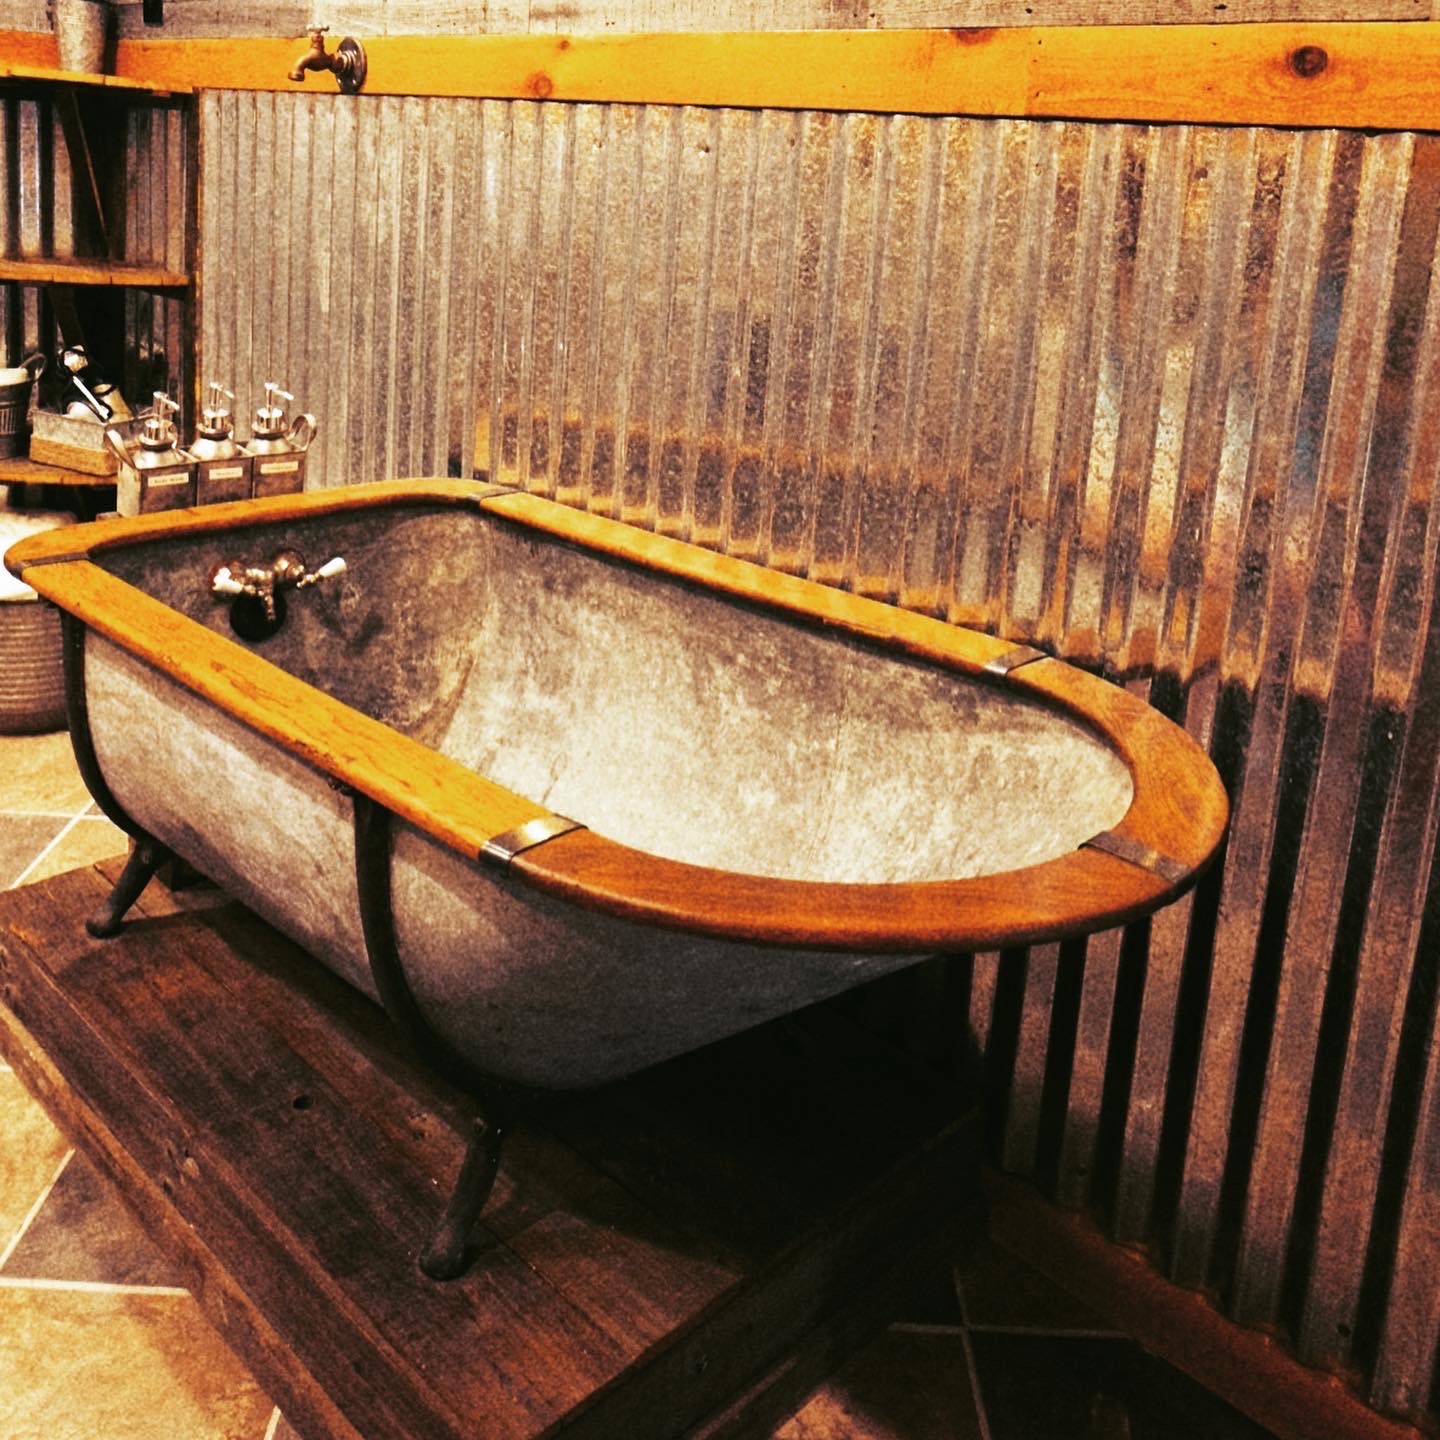 rustic tub in glowing embers room